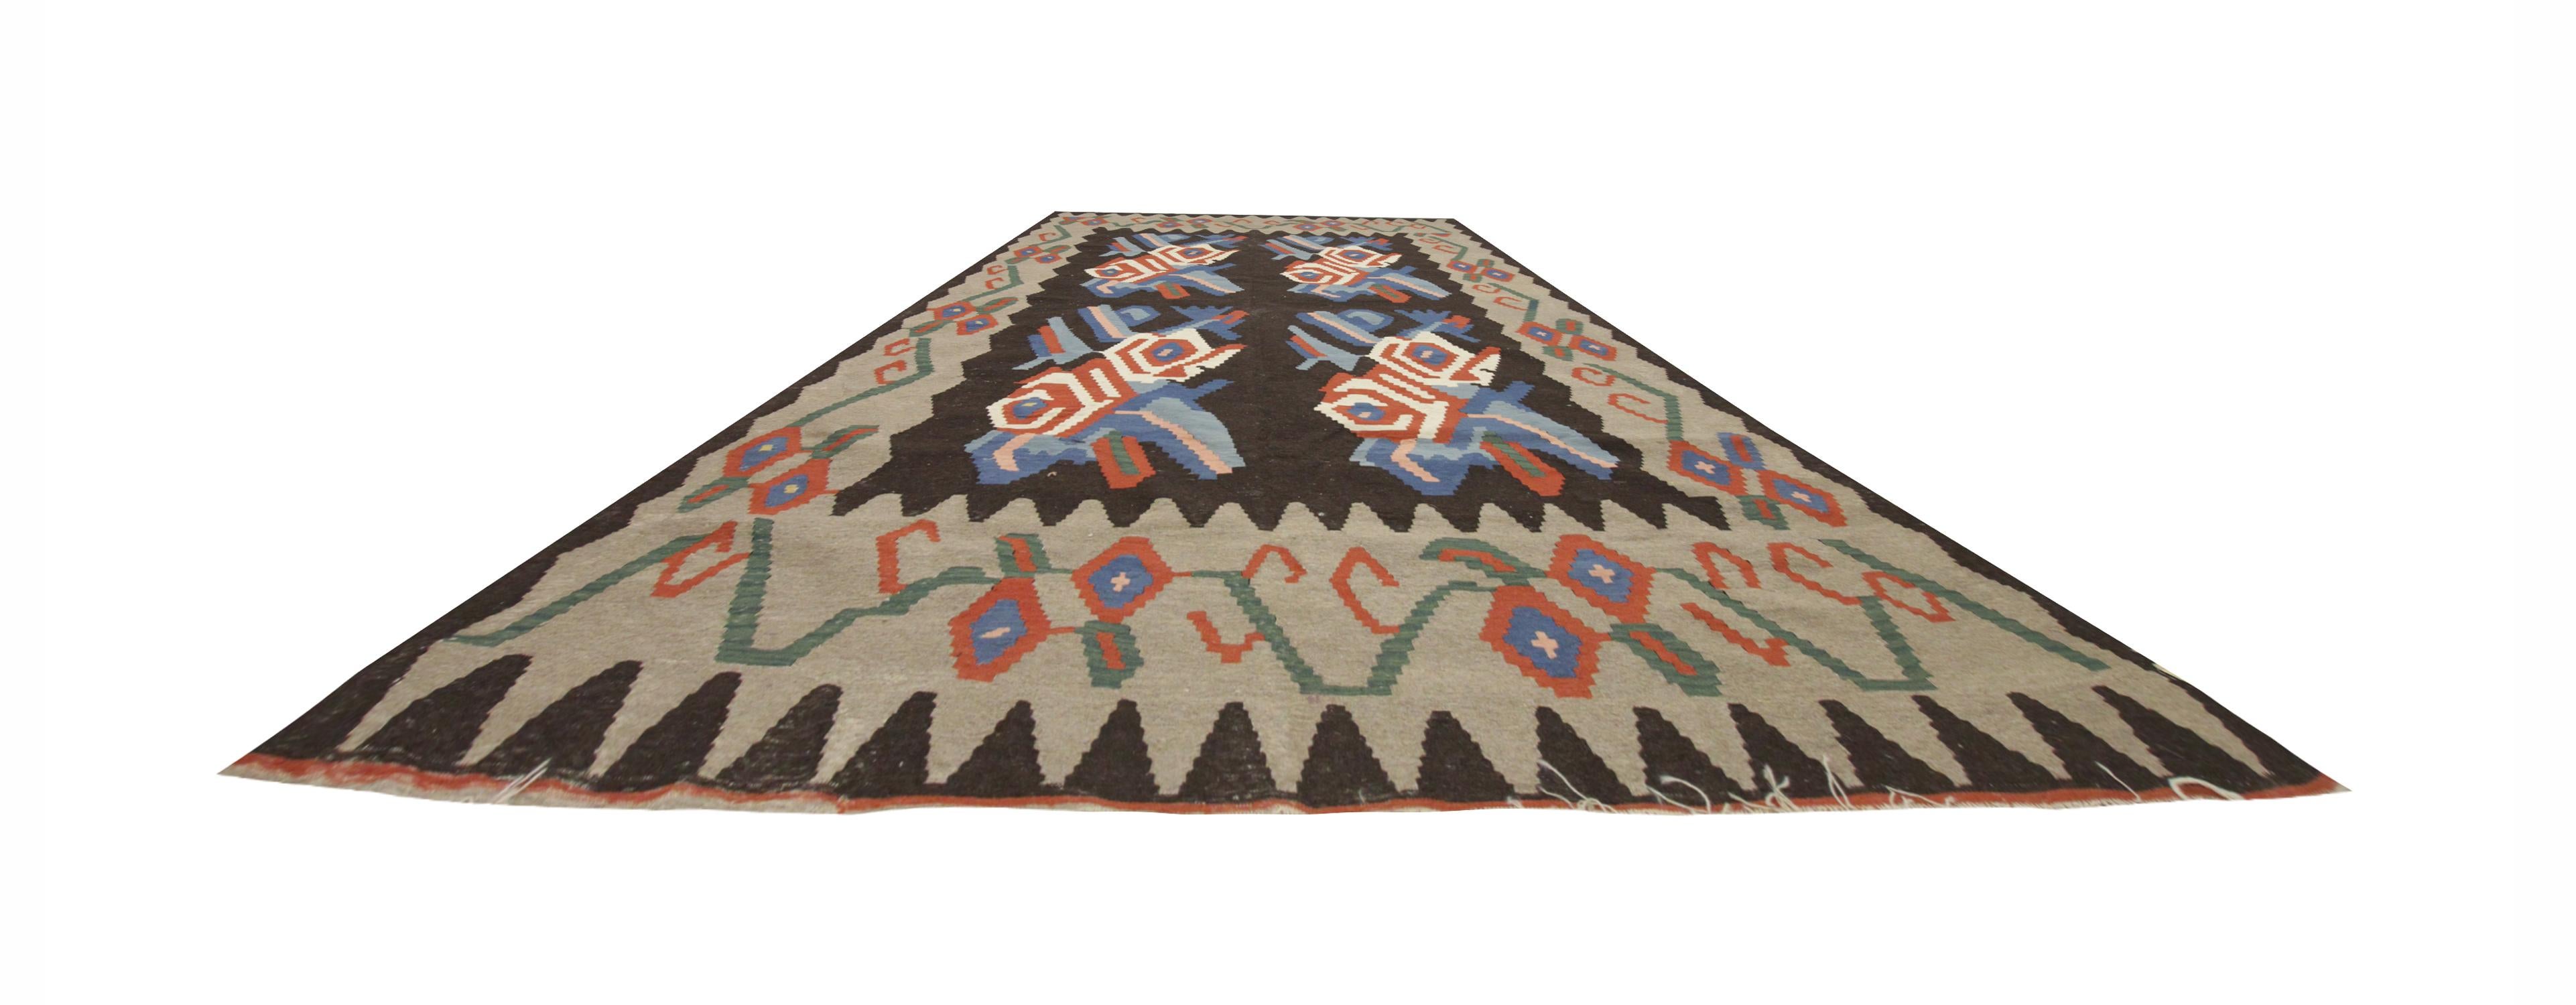 Tribal Vintage Floral Kilim Rug Handmade Flat weave Carpet For Sale